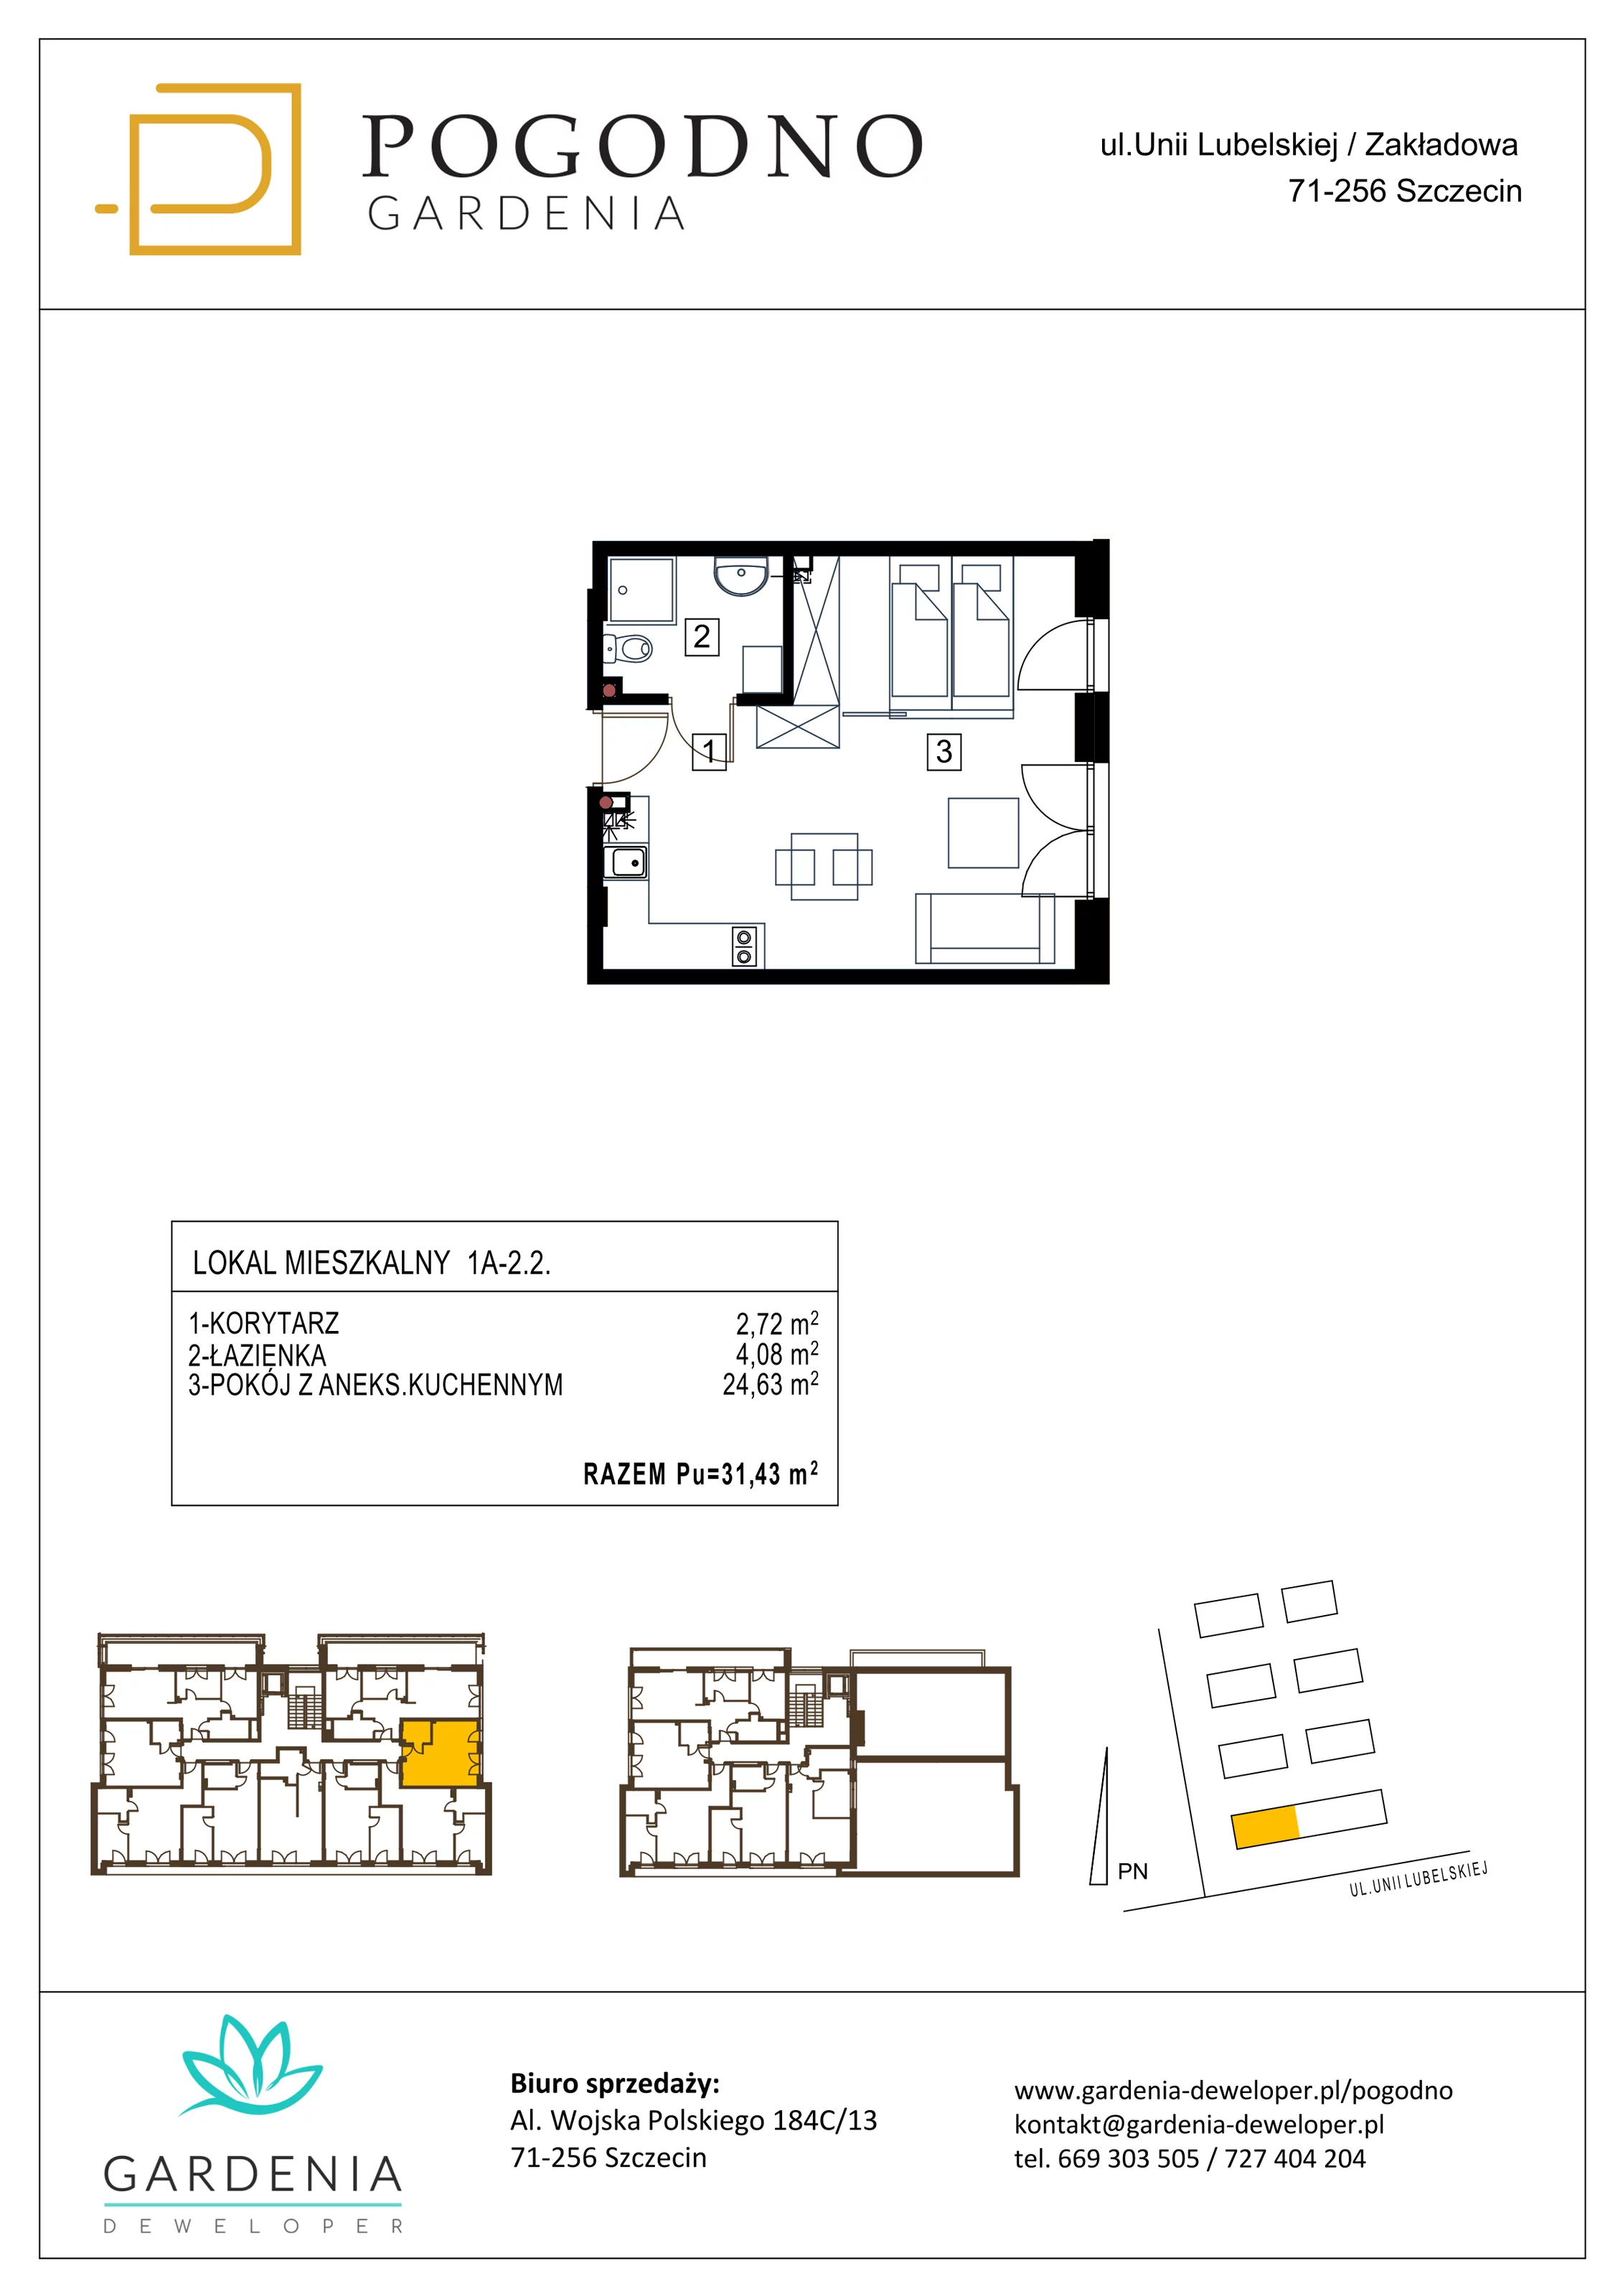 Mieszkanie 31,43 m², piętro 2, oferta nr 1A-2-2, Gardenia Pogodno, Szczecin, Zachód, Pogodno, ul. Unii Lubelskiej